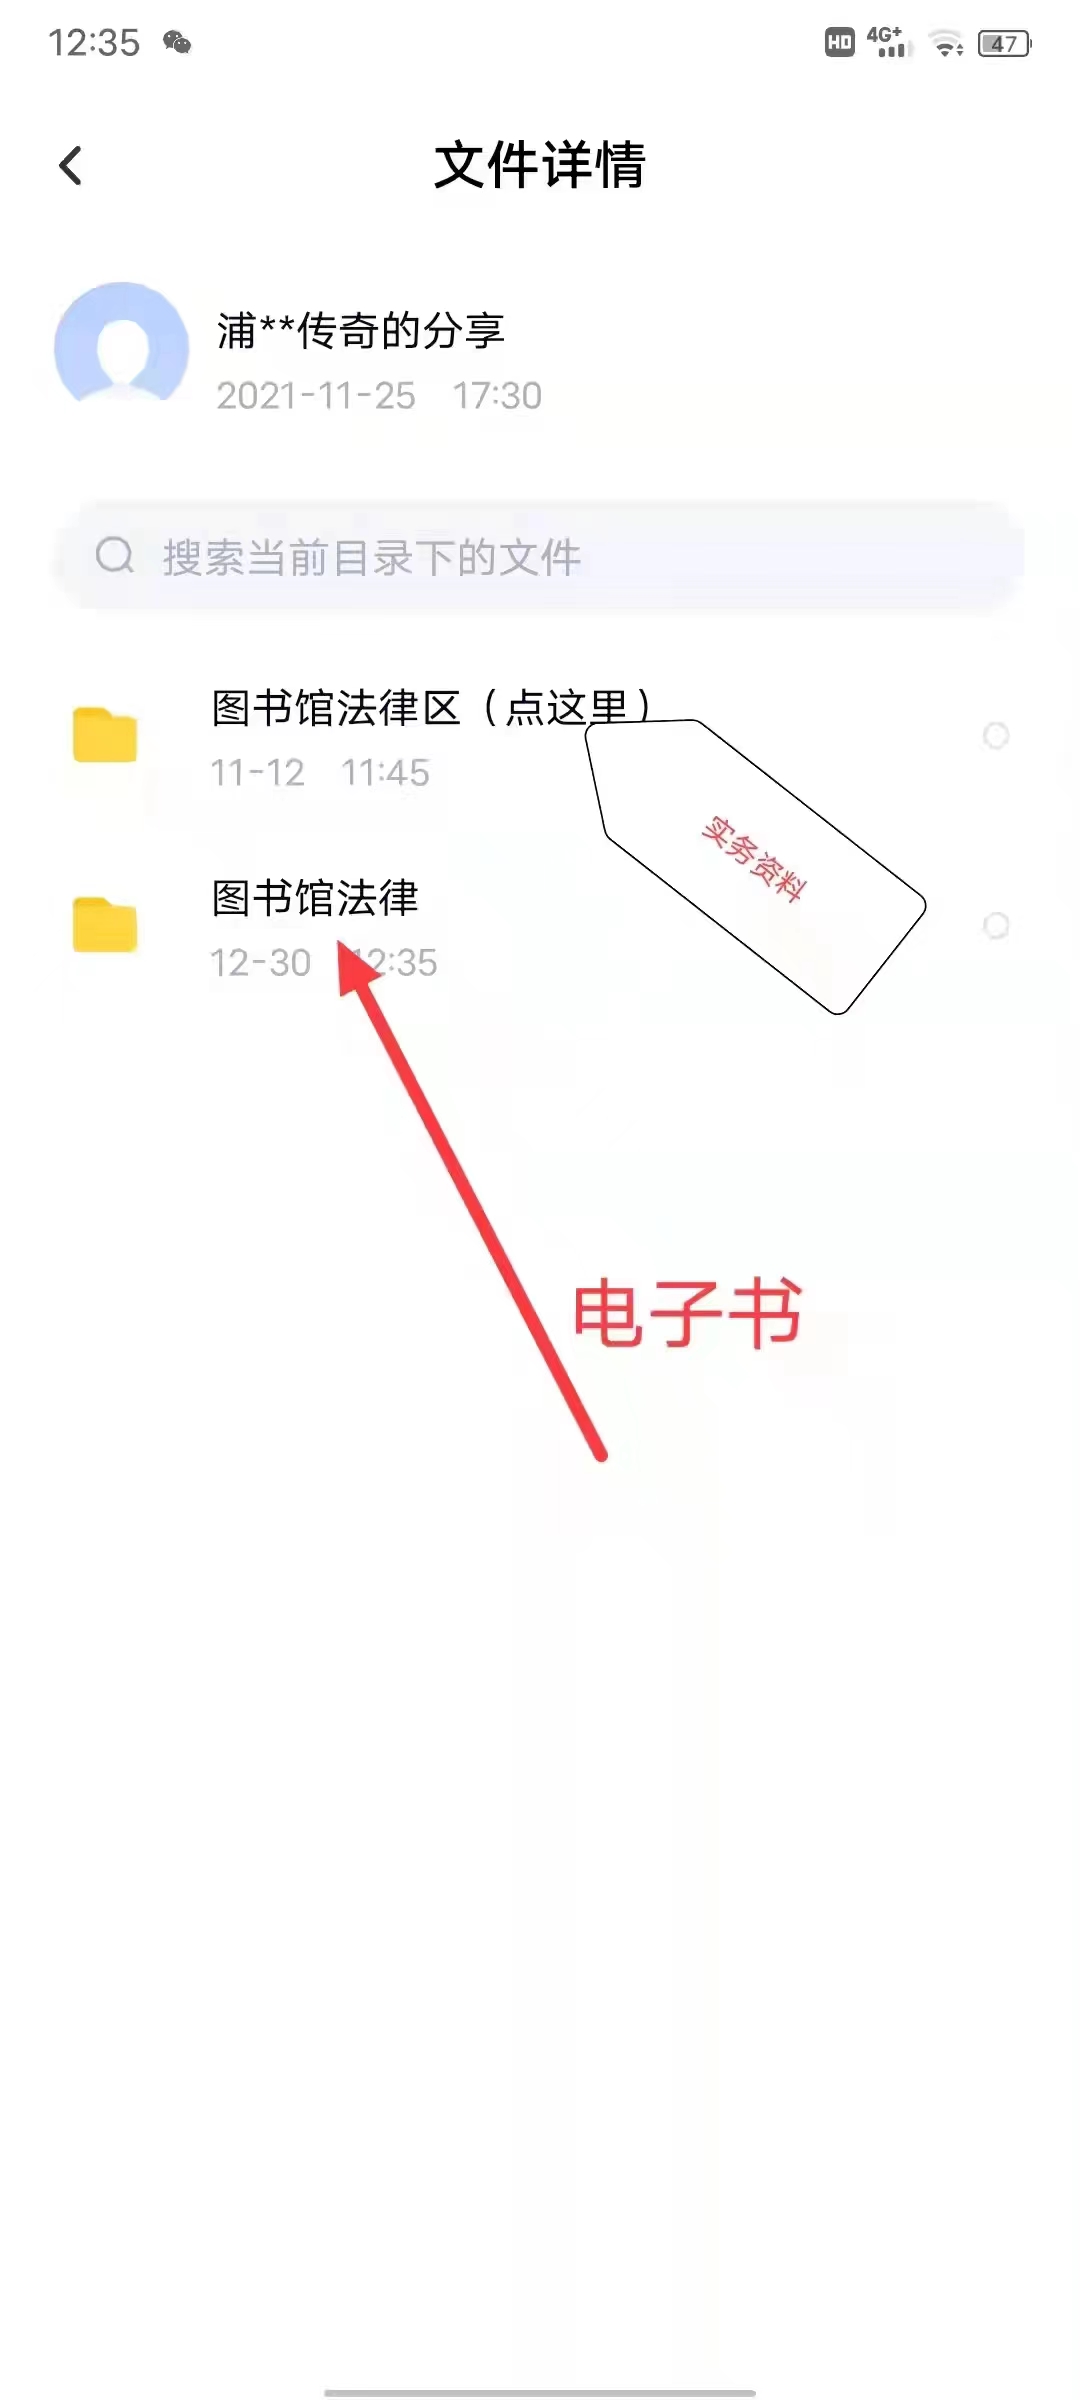 【法律】【PDF】303 公民个人信息保护法律指南 202209 李梓琪，杨雪